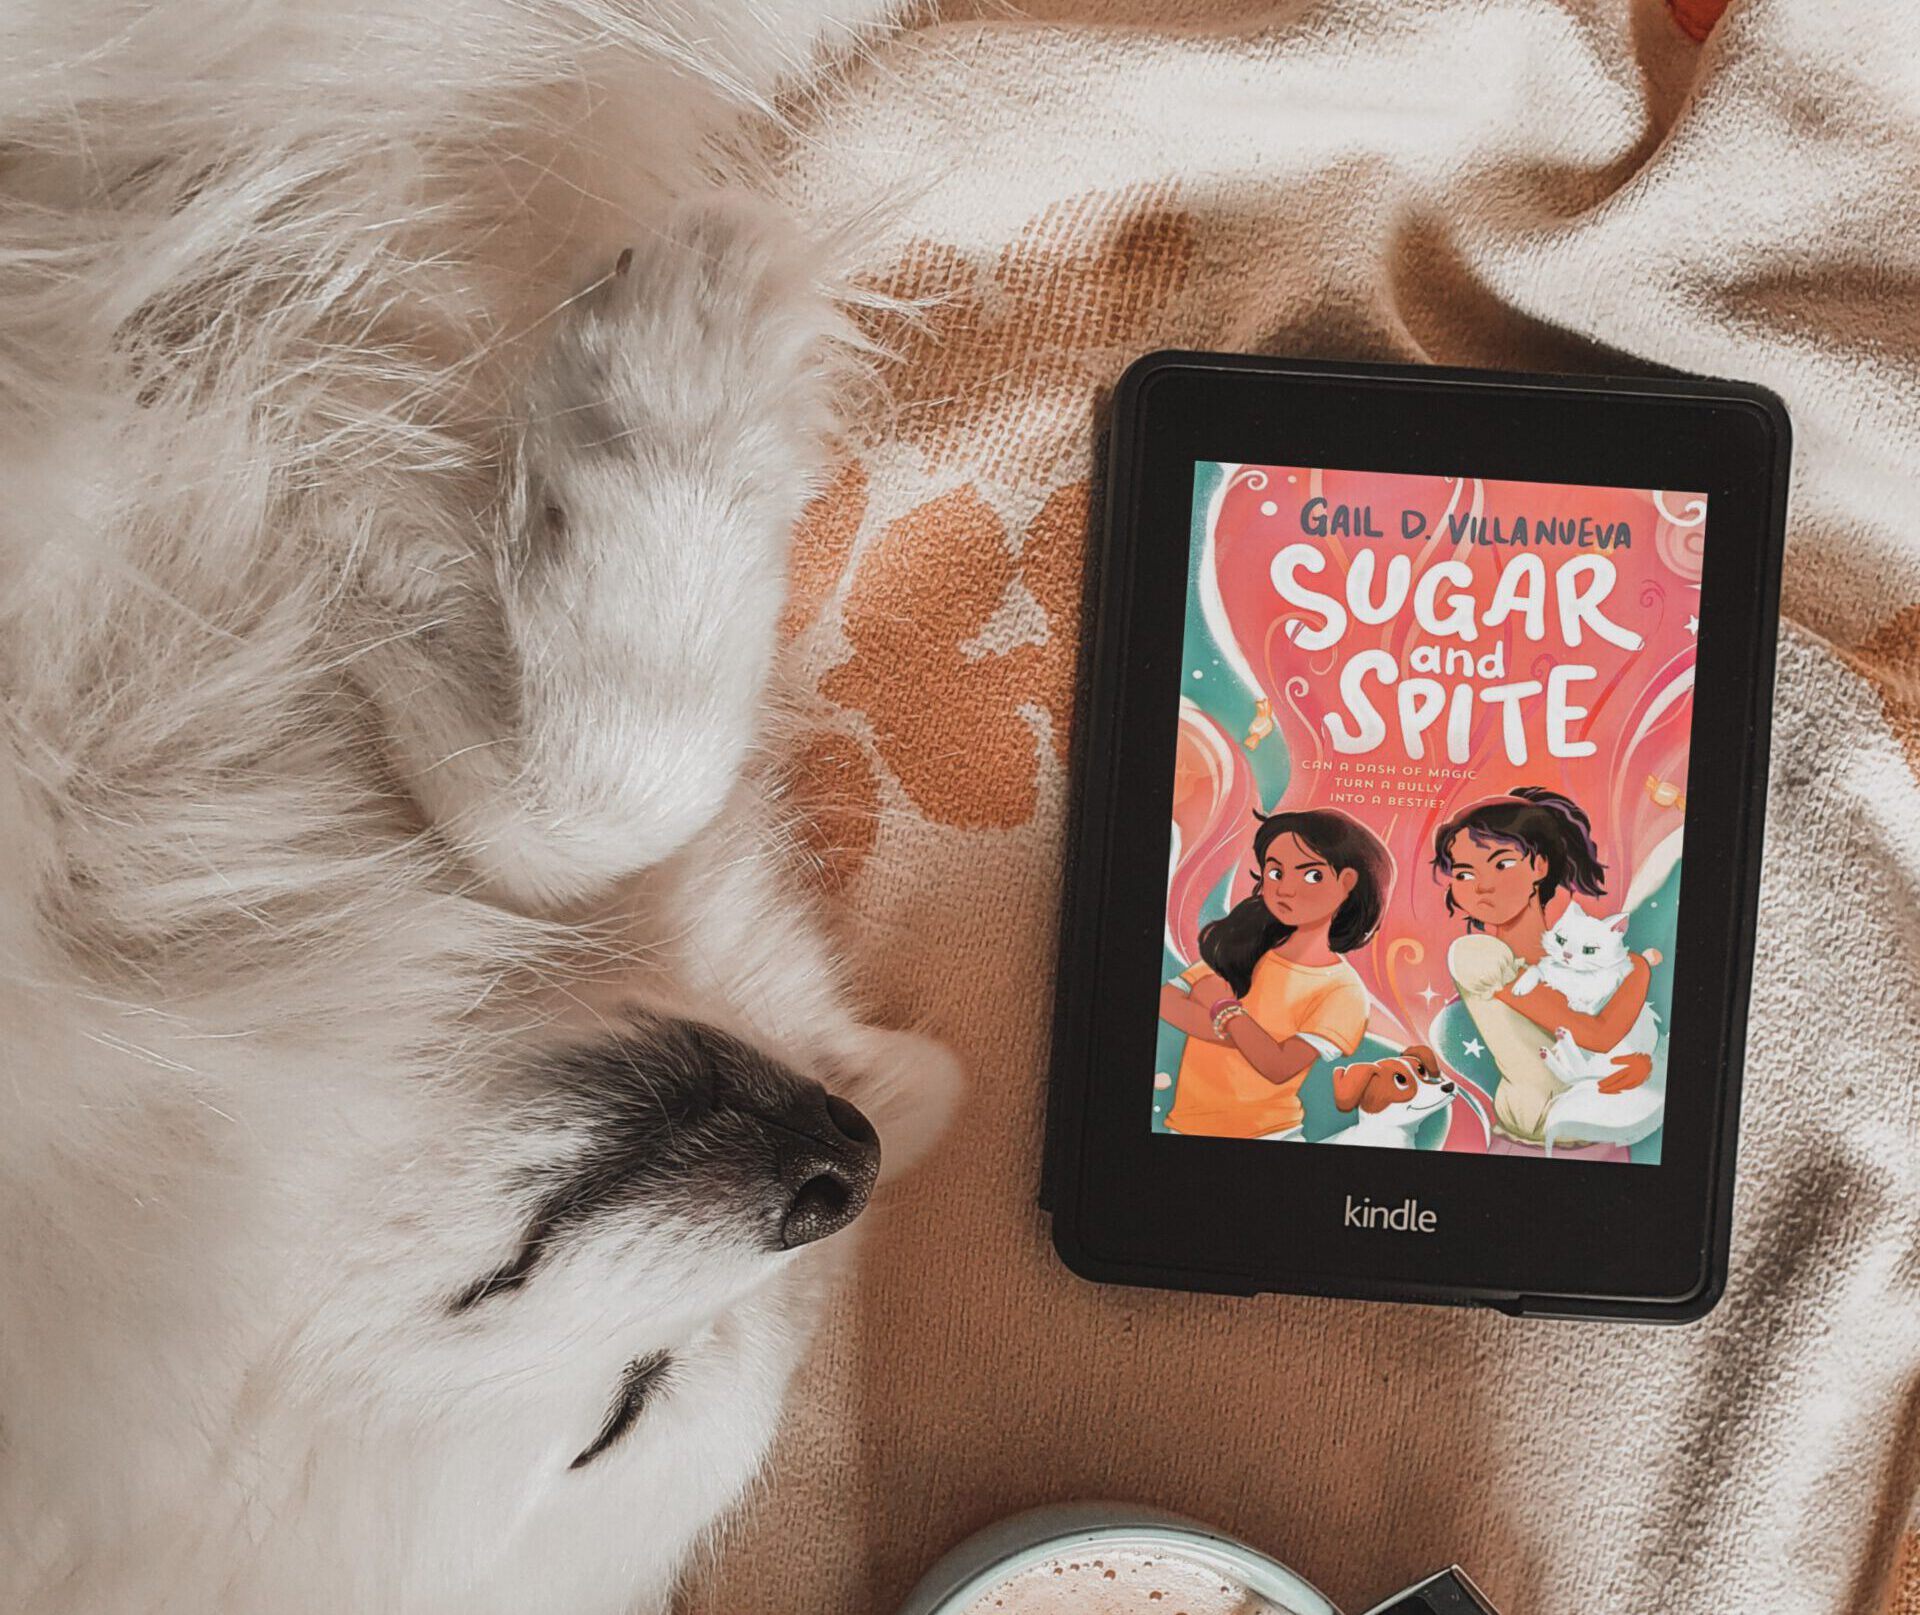 Sugar and Spite by Gail D. Villanueva